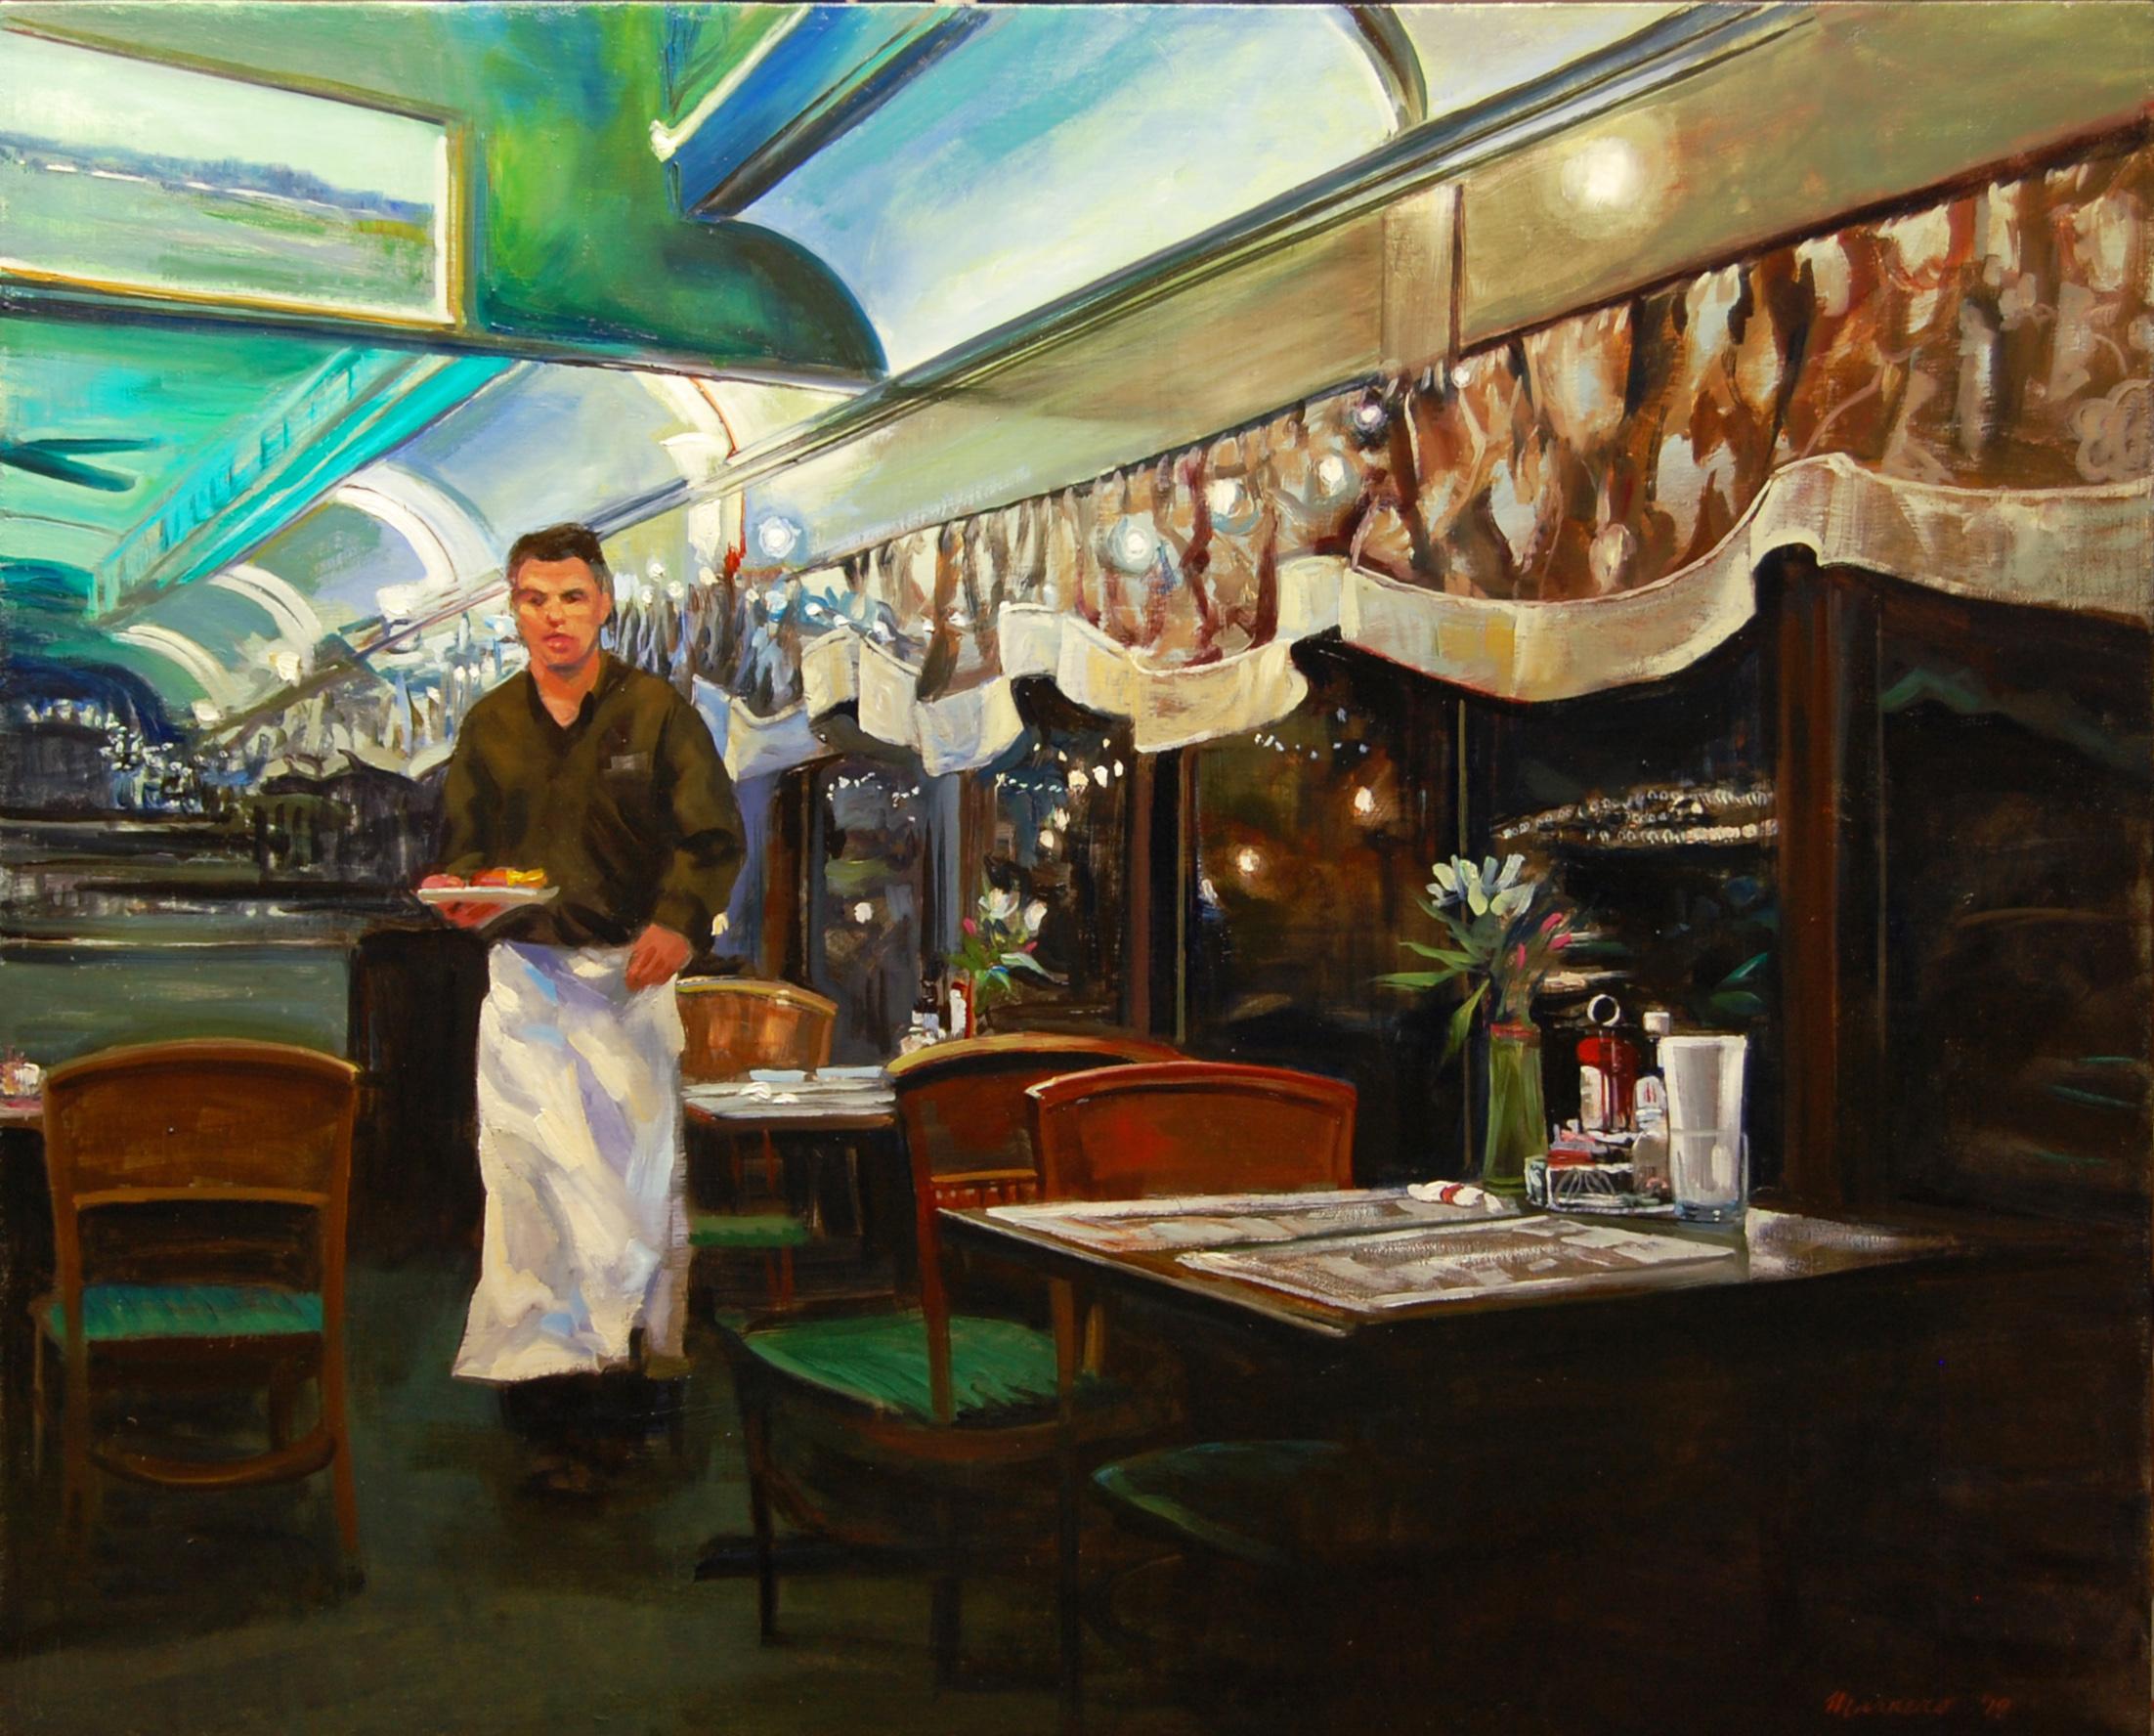 Peinture à l'huile « At the Clinton Station Diner » (Au dîner de la station Clinton